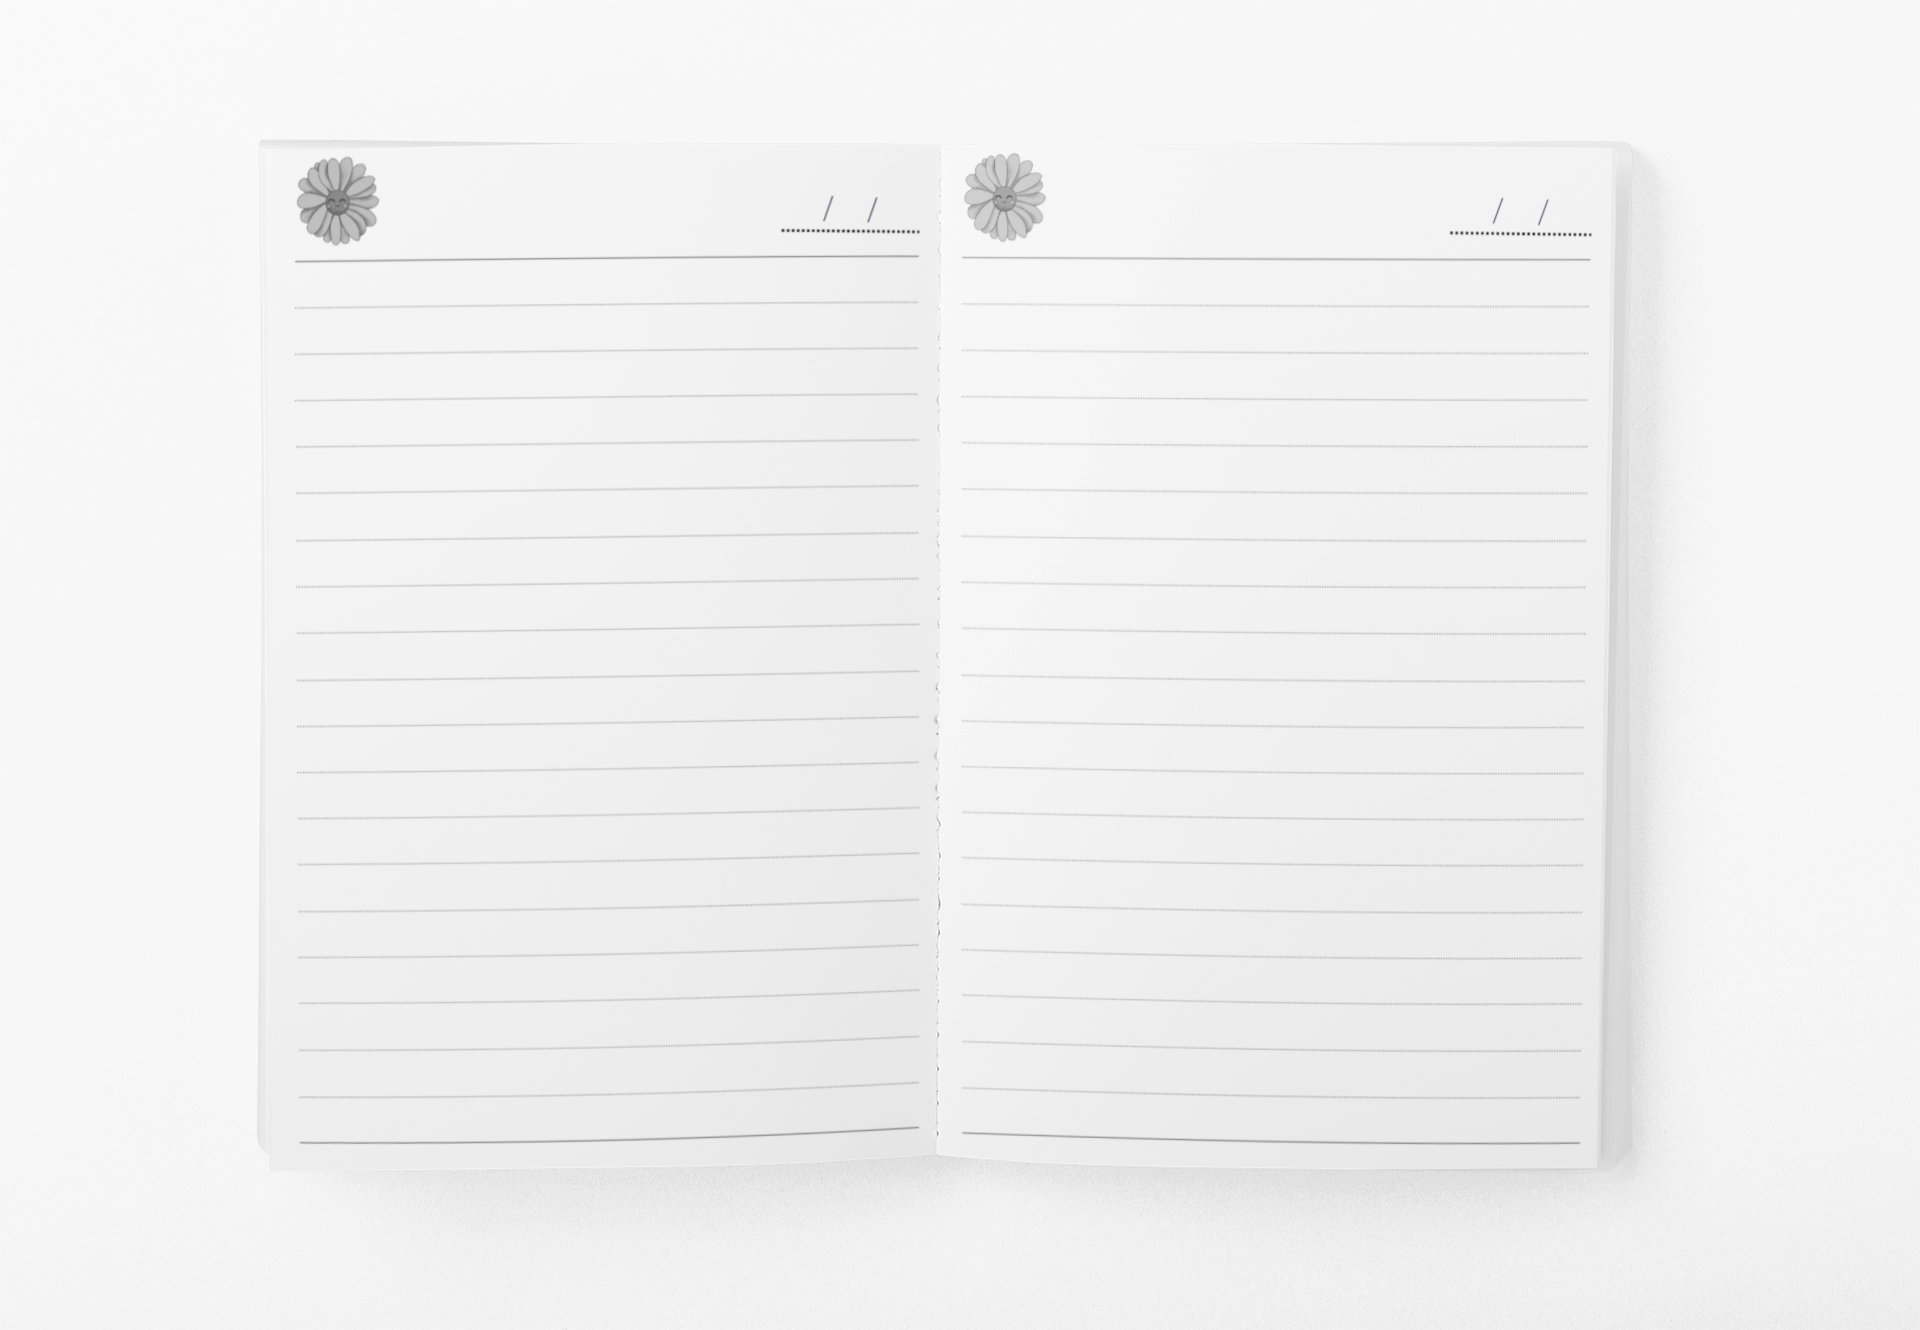 Goals Notebook